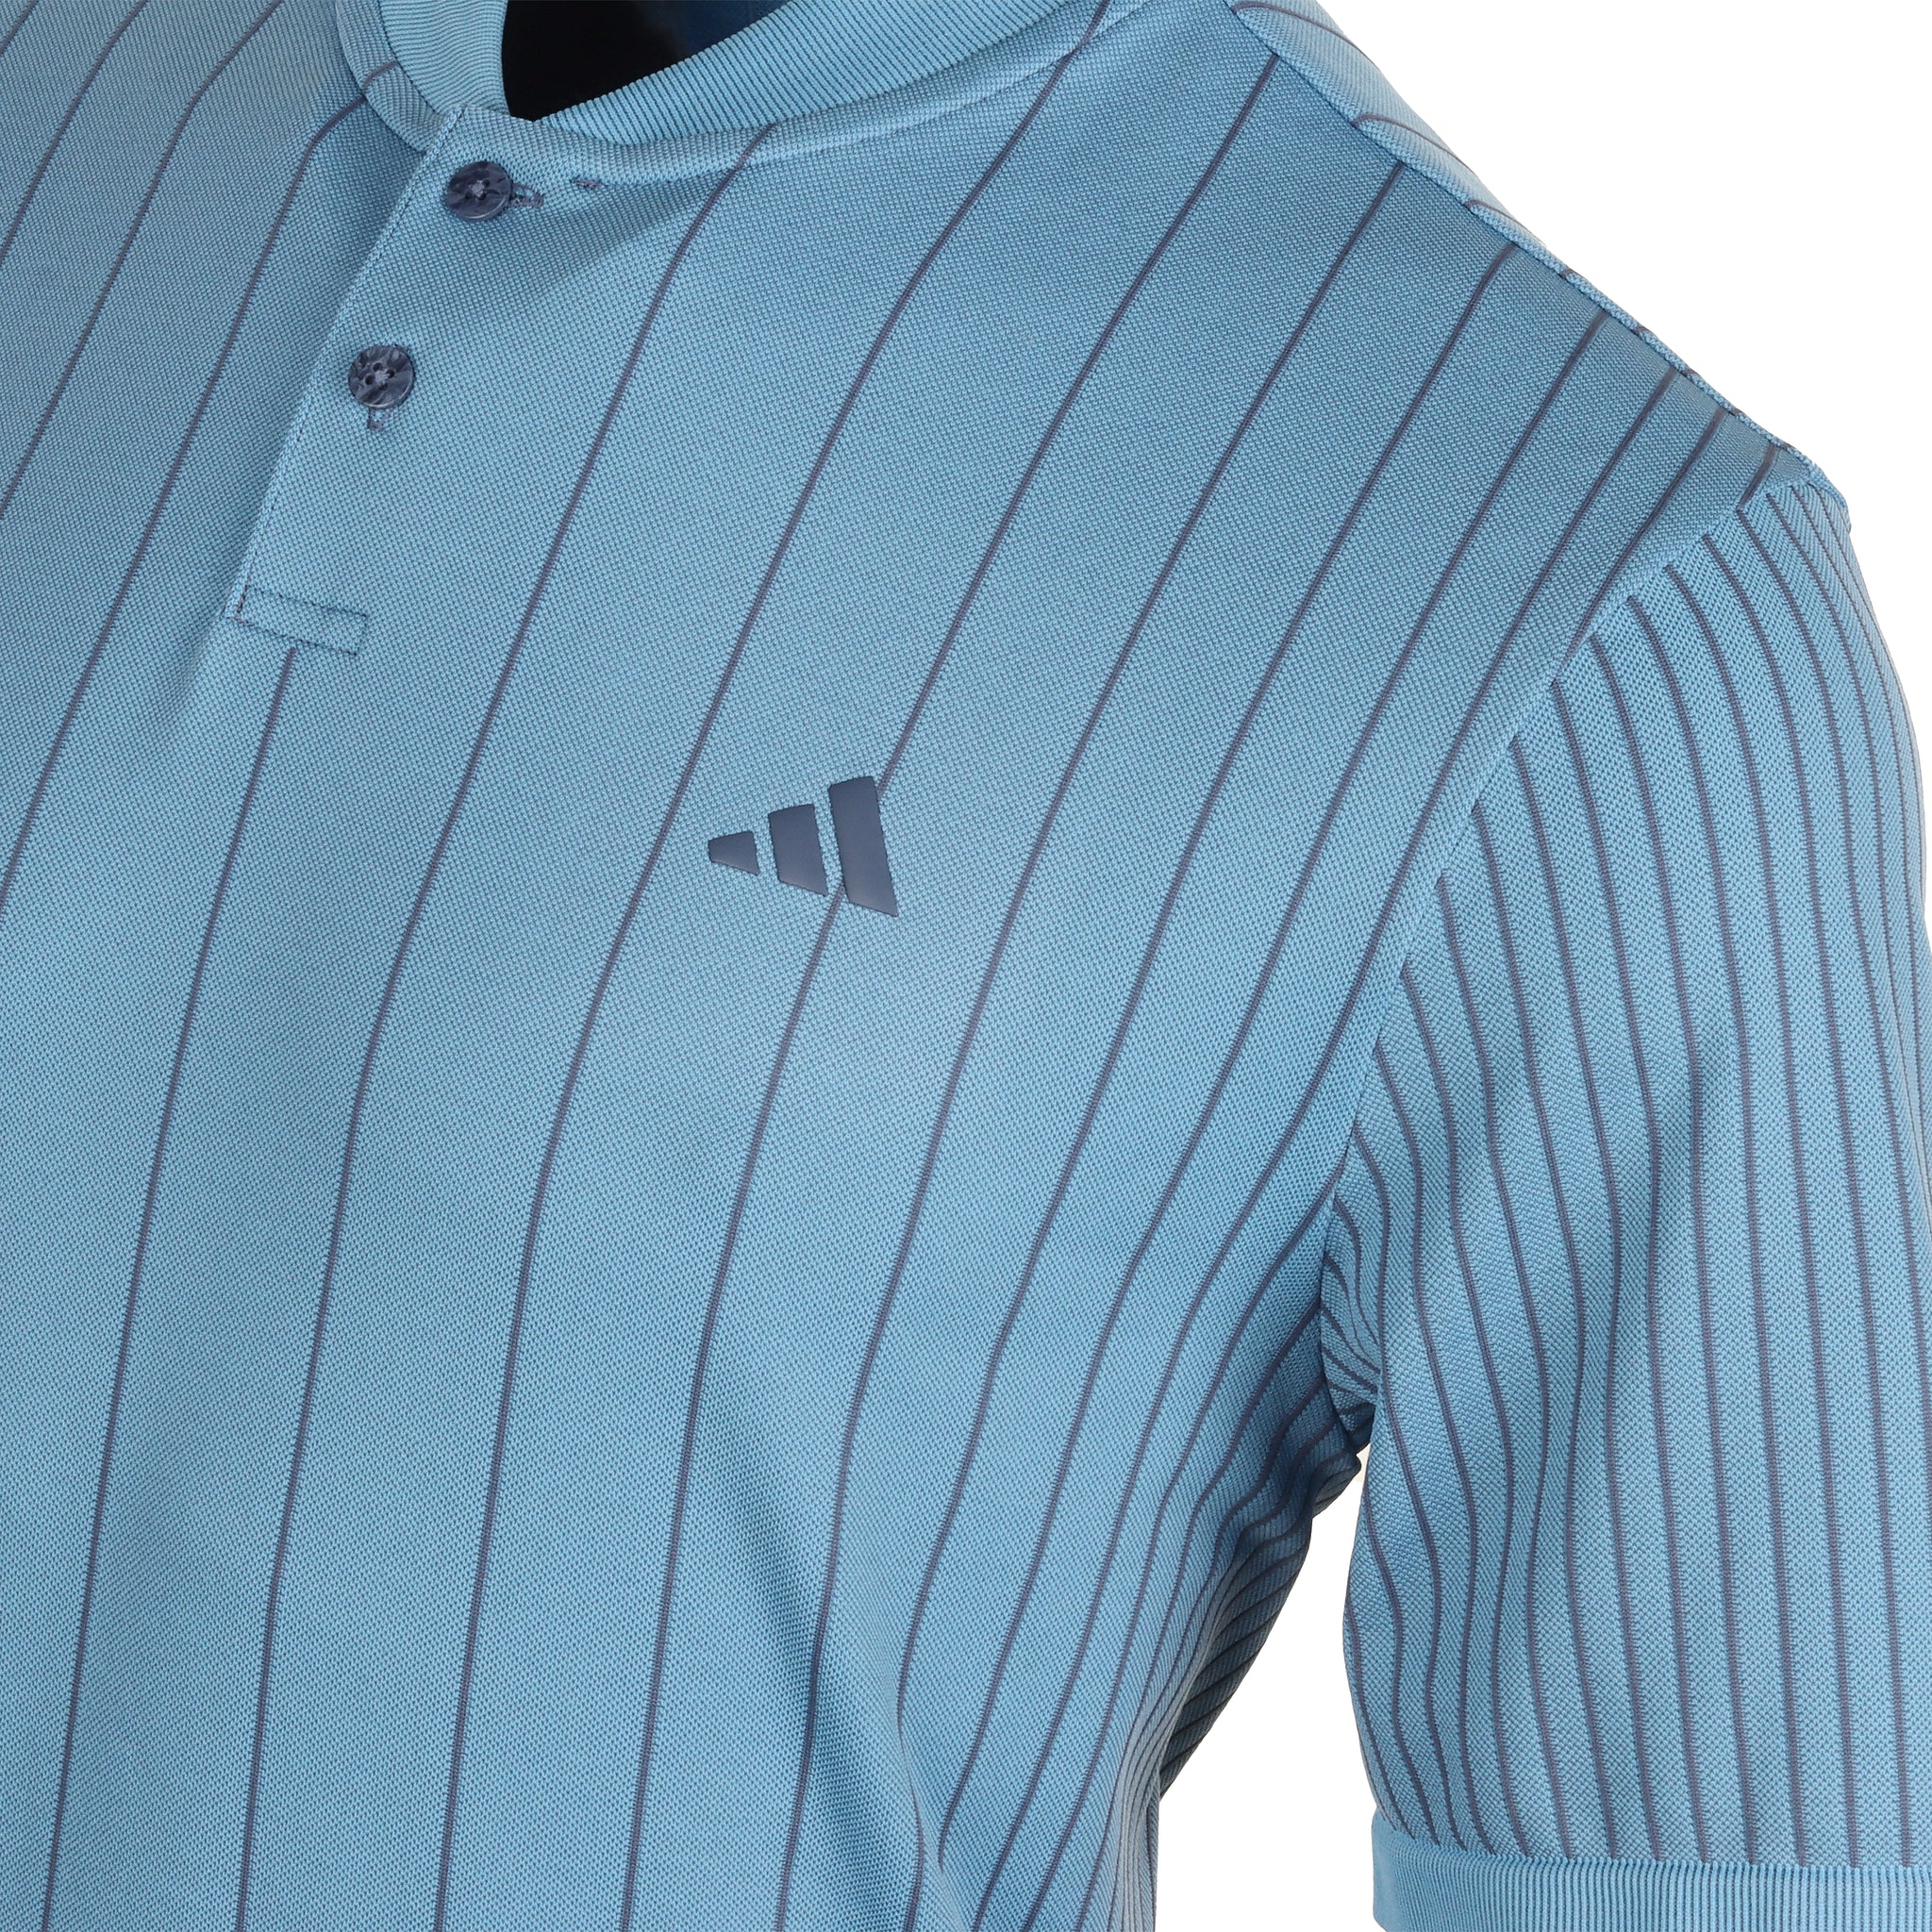 adidas Golf Ultimate365 Tour Primeknit Shirt